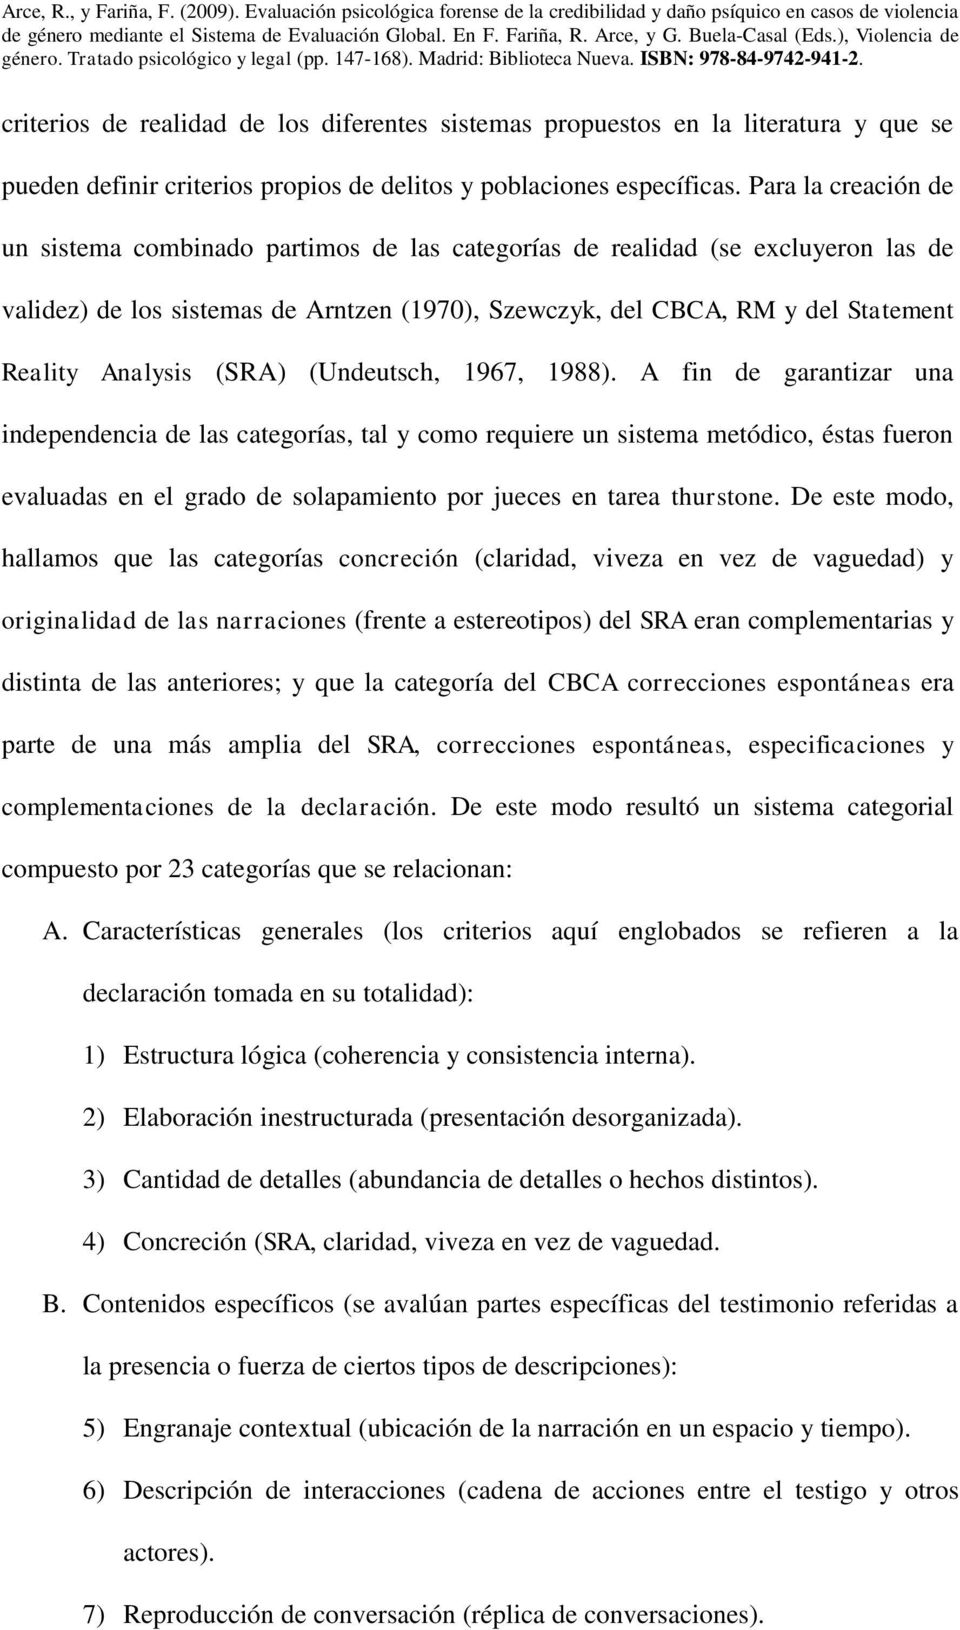 Analysis (SRA) (Undeutsch, 1967, 1988).